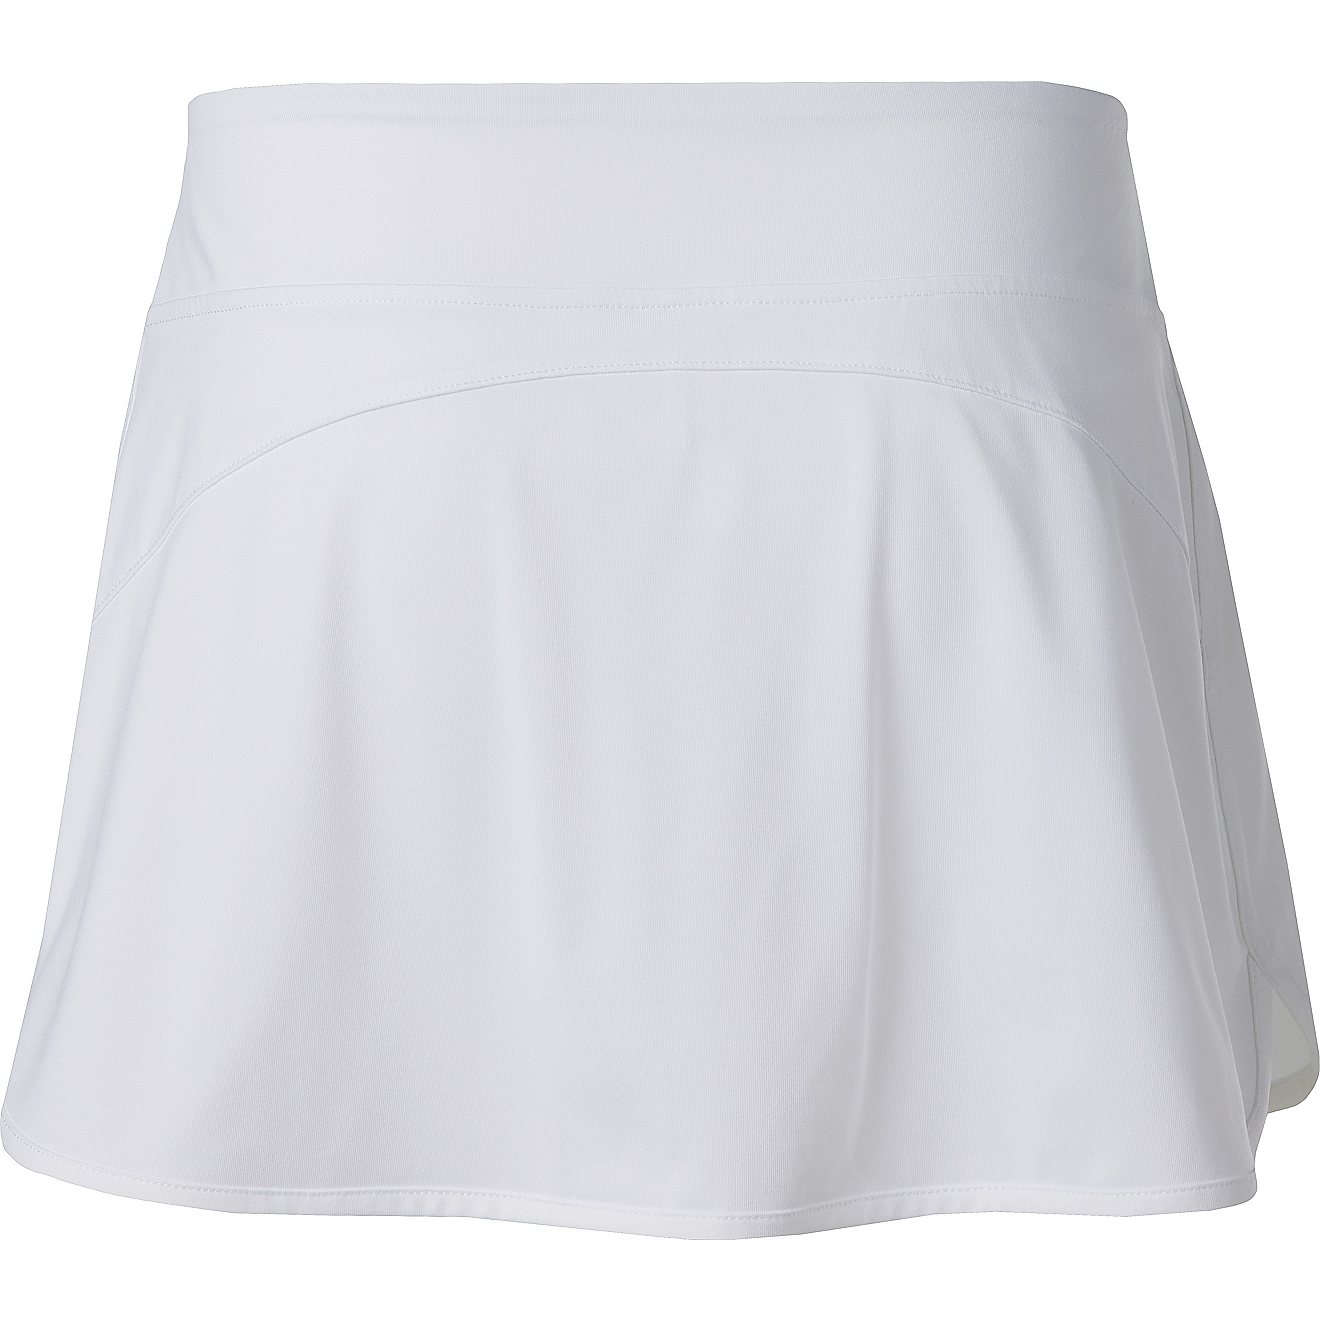 BCG Women's Tennis Skirt | Academy